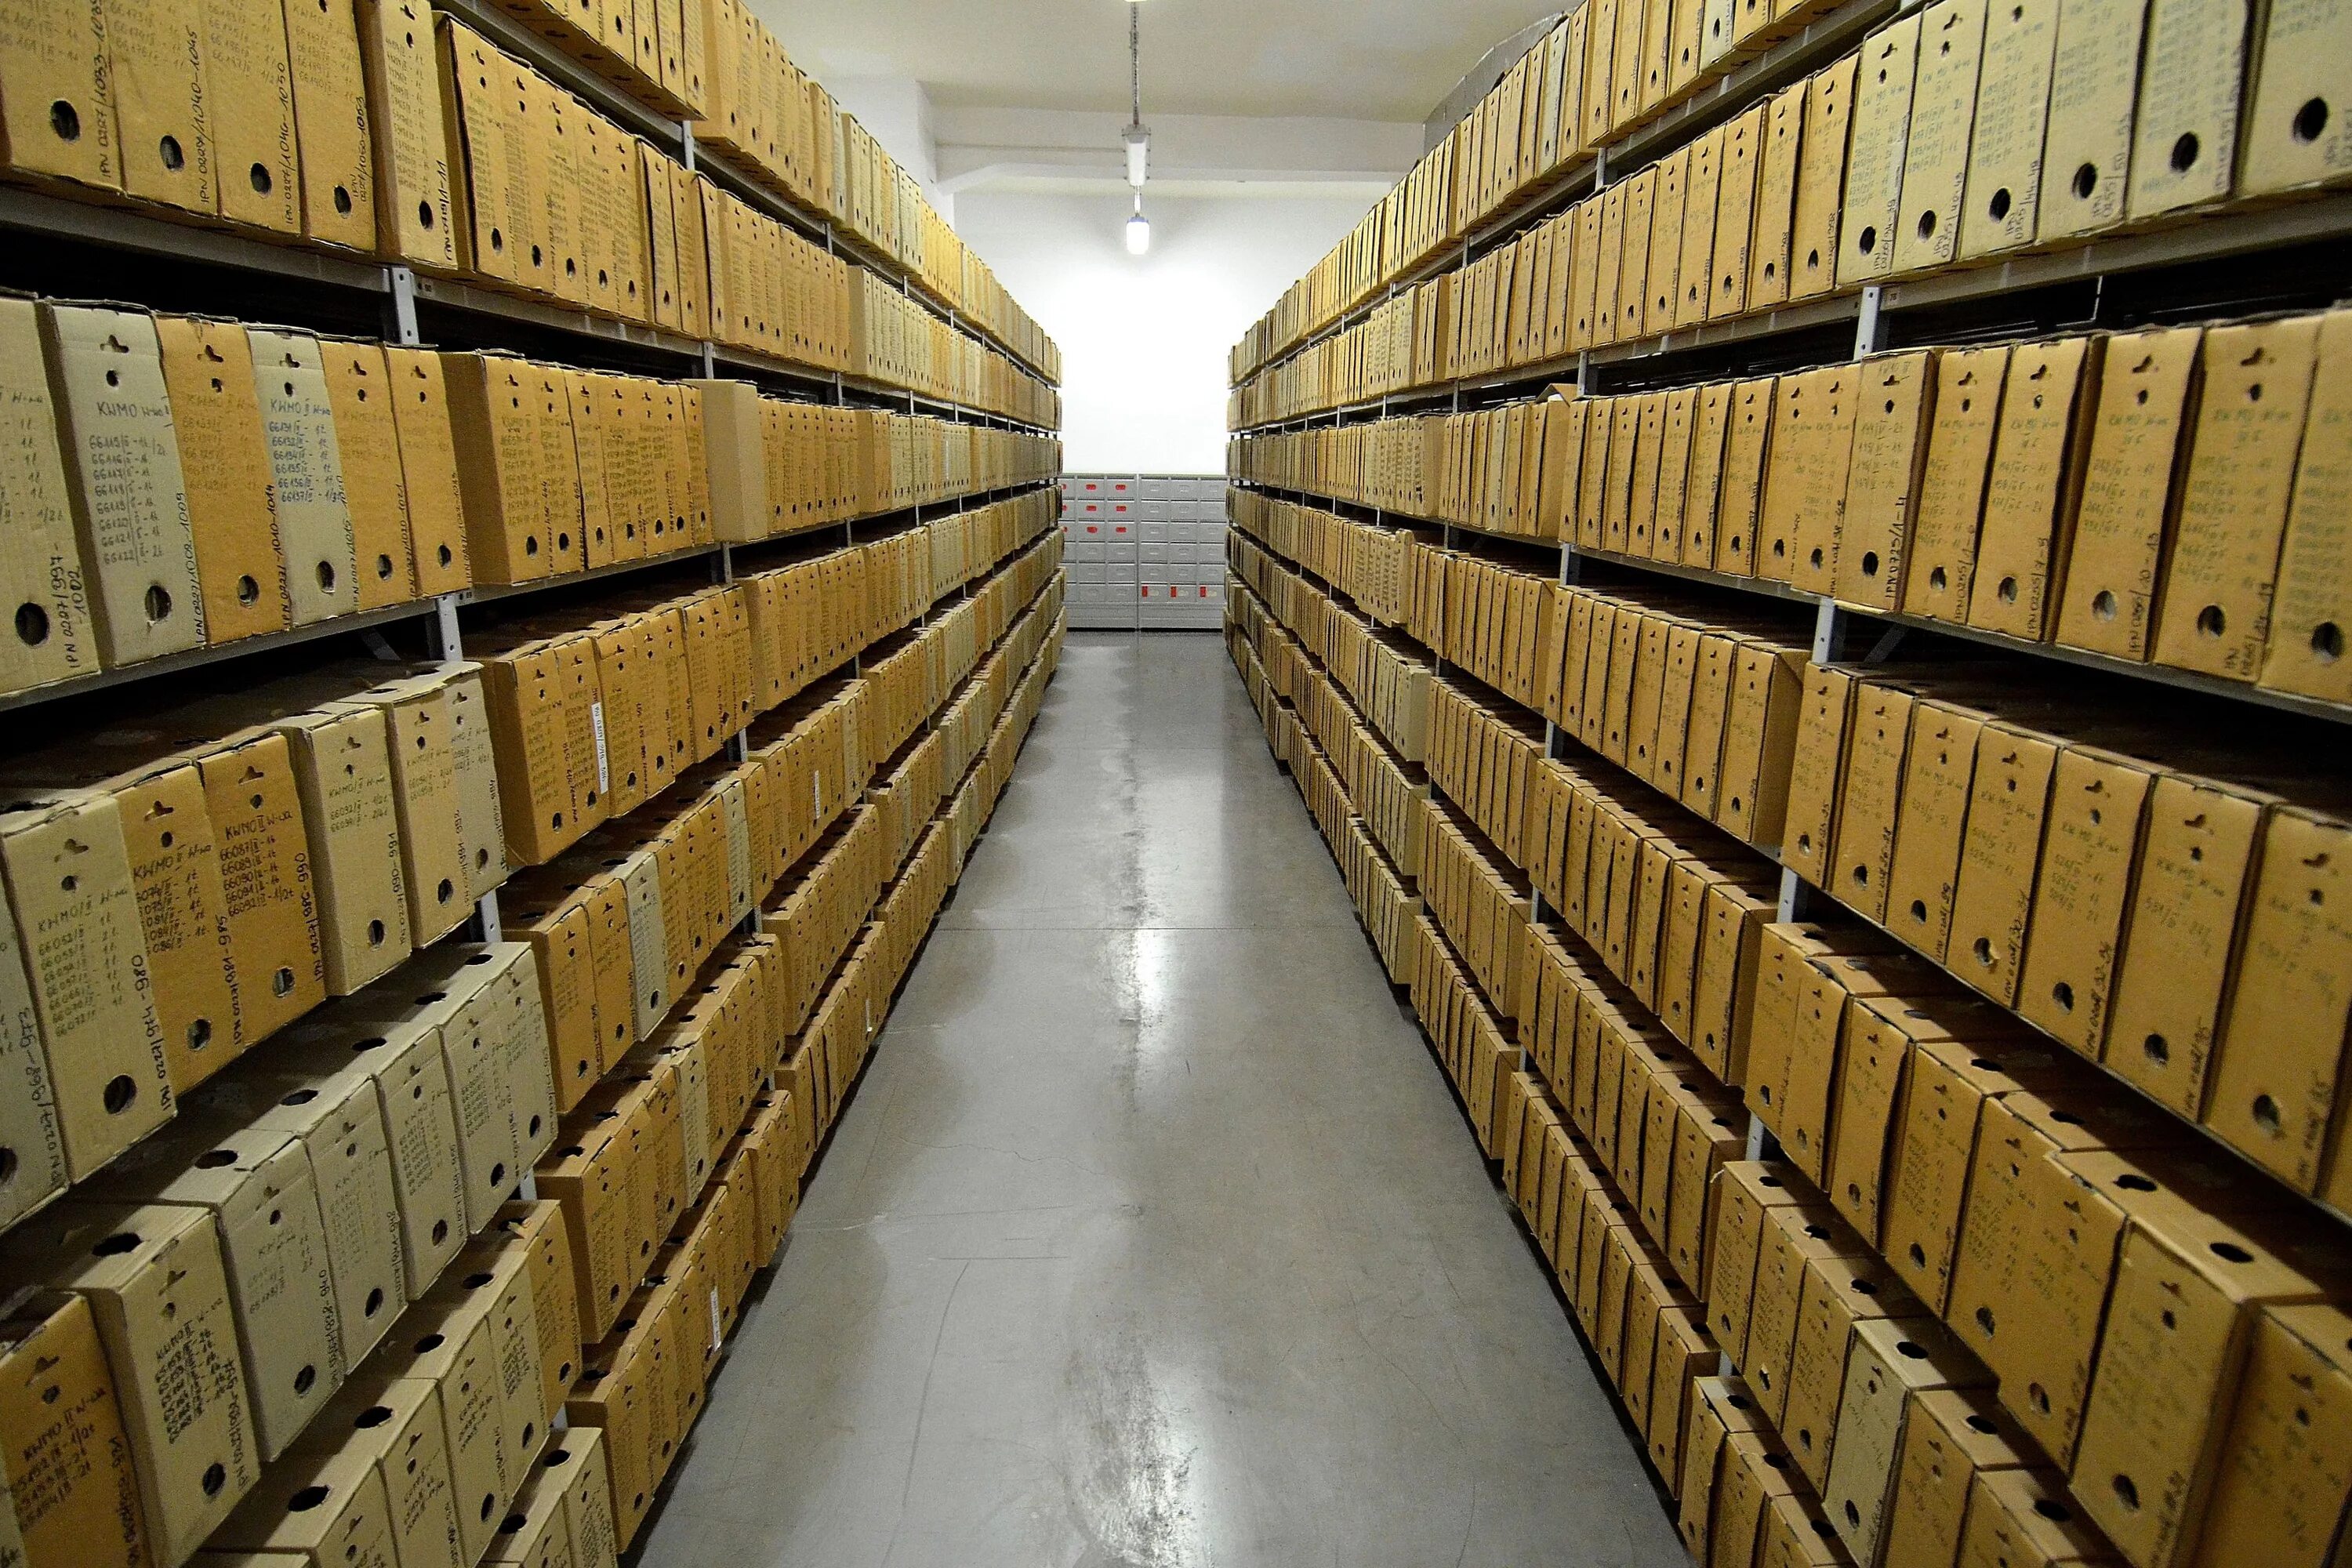 Https arxiv org. Архив. Военный архив. Архив документов. Хранилище документов.